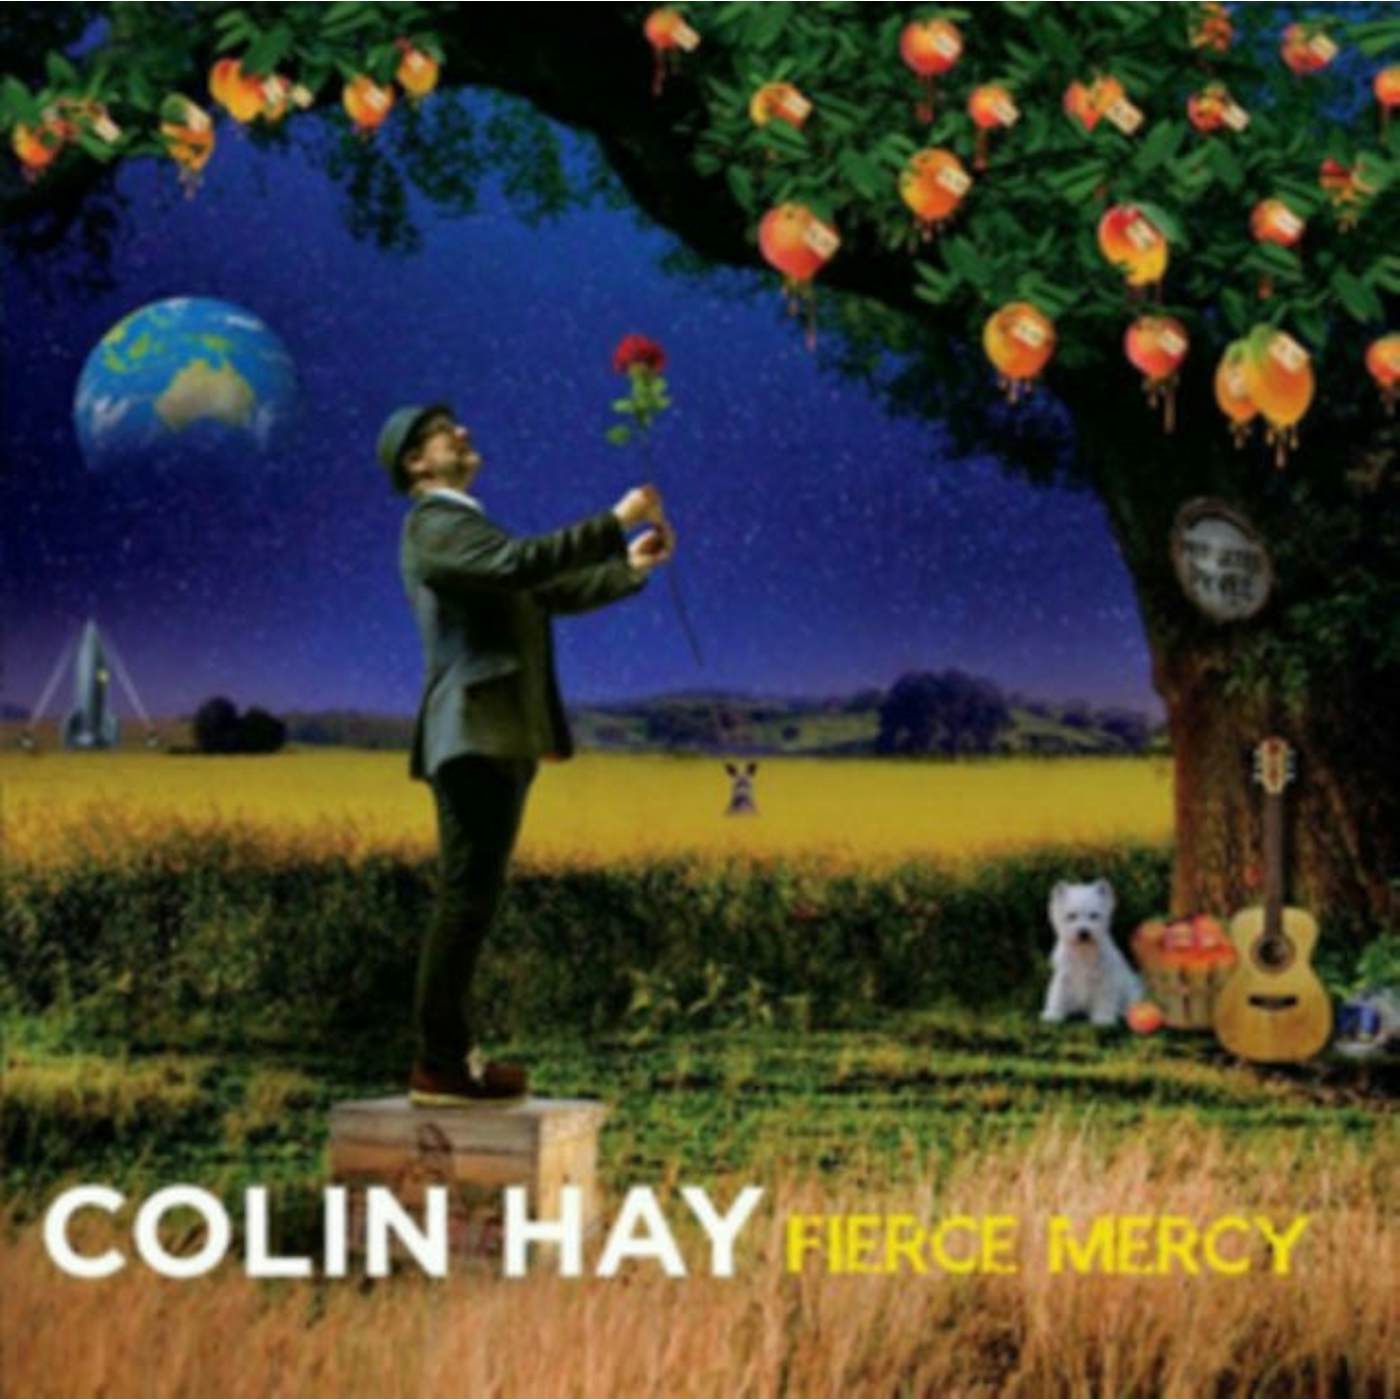 Colin Hay LP - Fierce Mercy (Vinyl Edition)